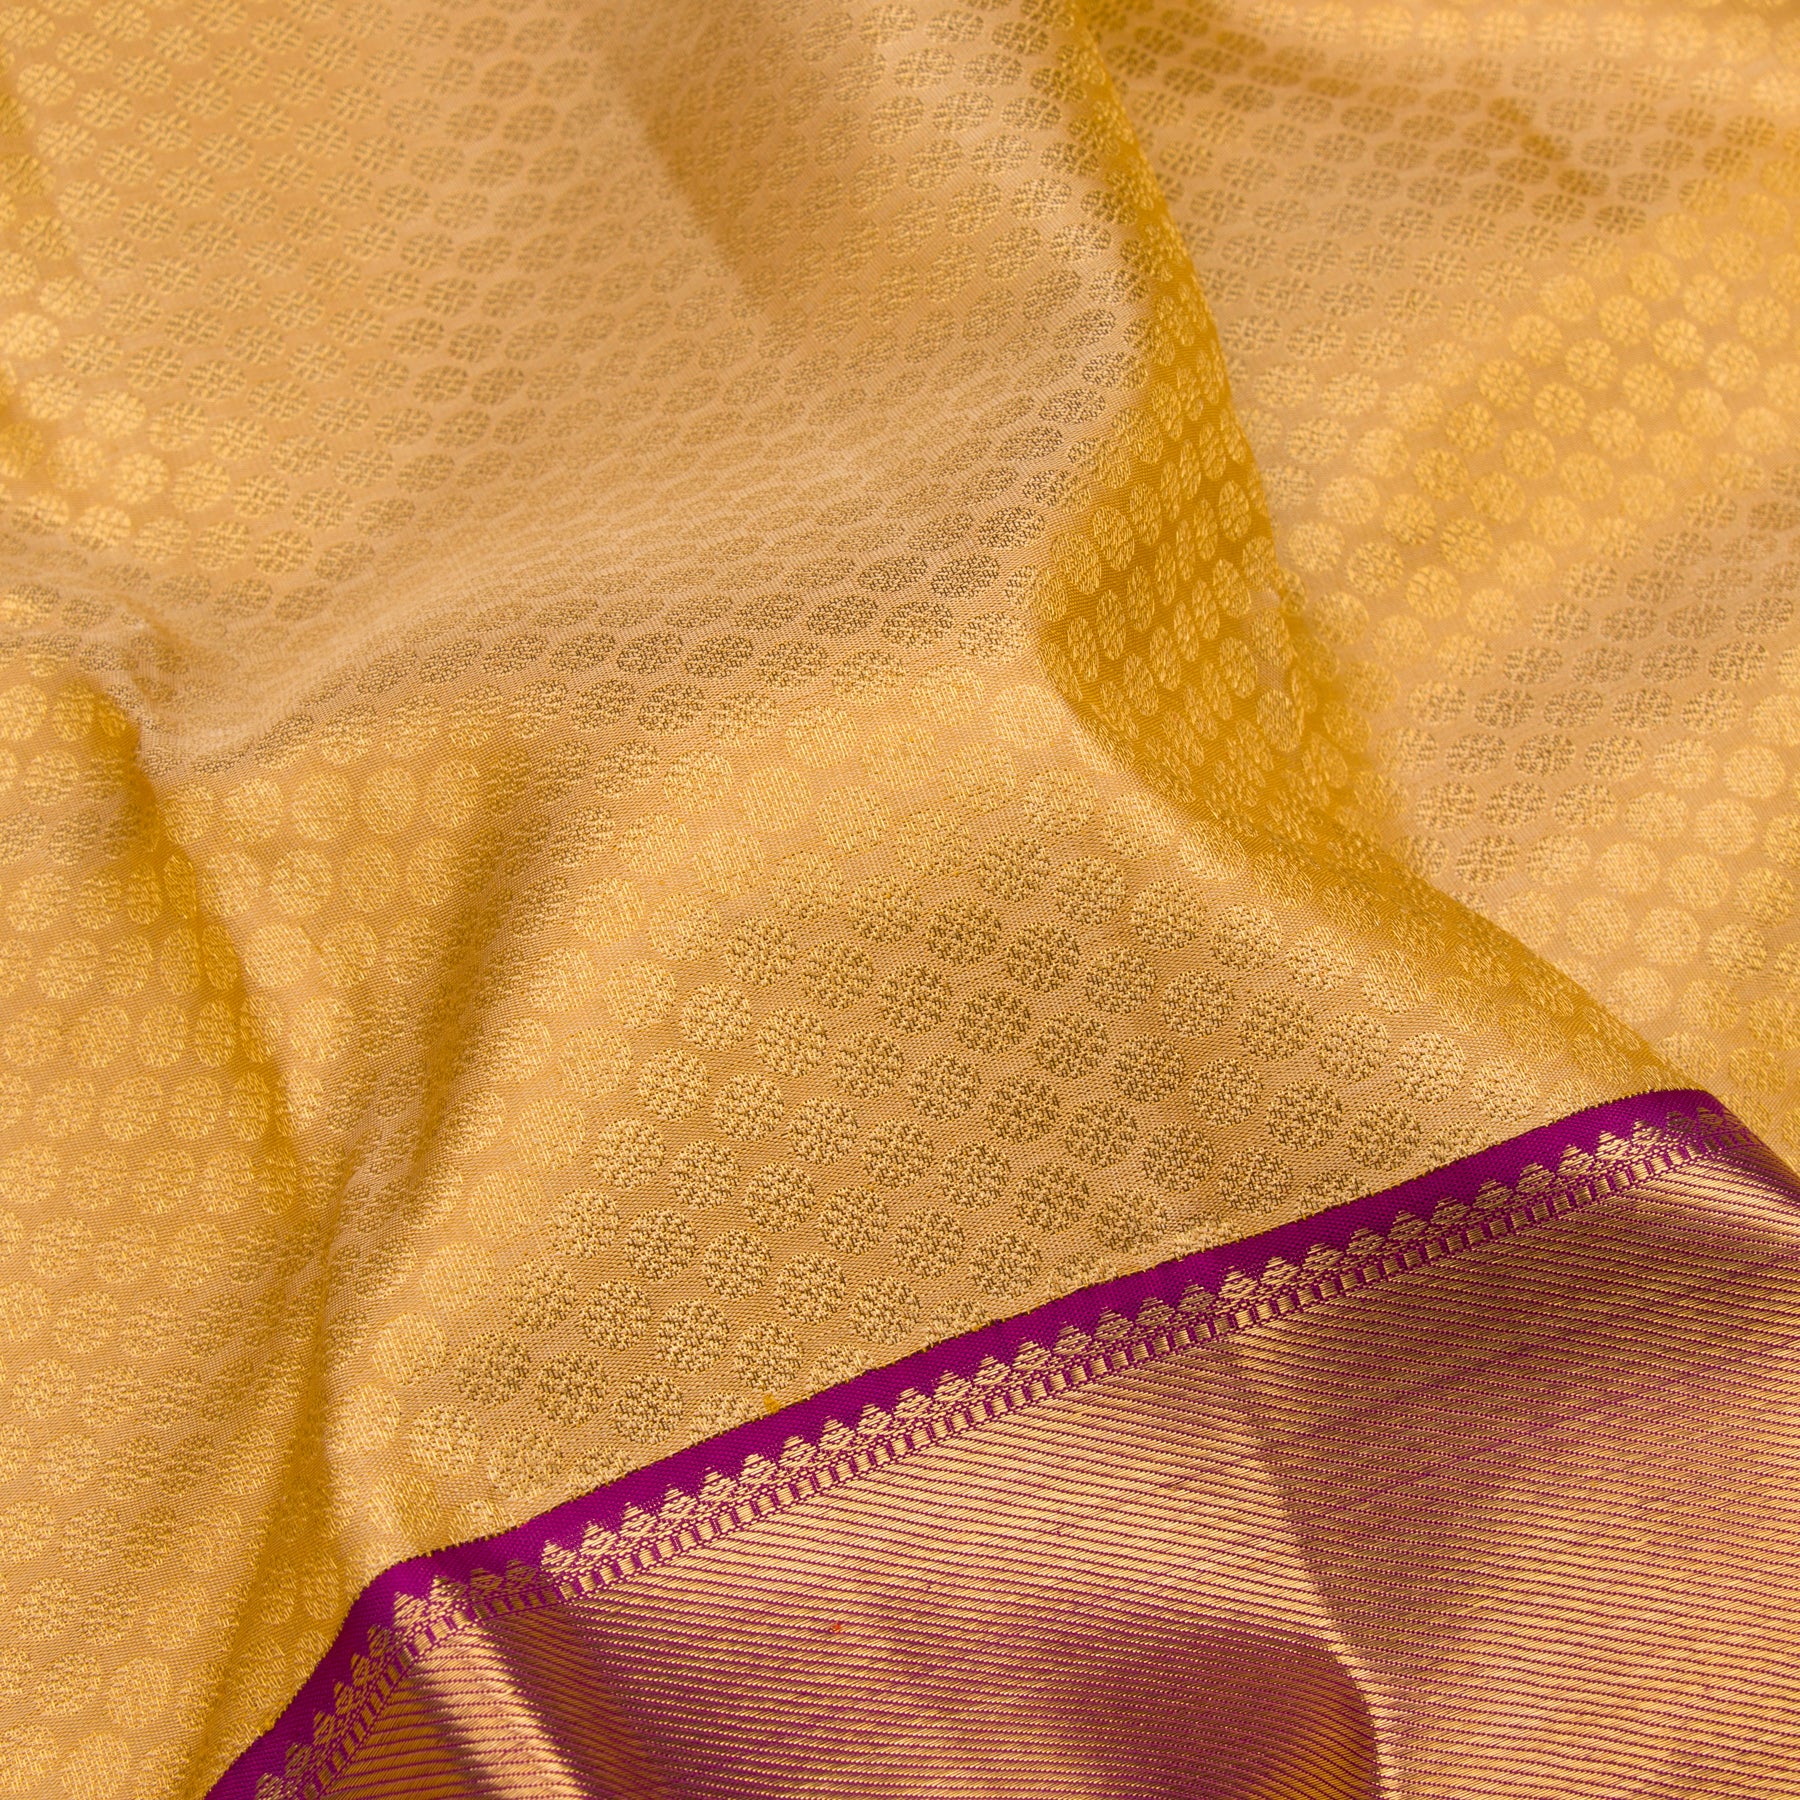 Kanakavalli Kanjivaram Silk Sari 23-110-HS001-05114 - Fabric View